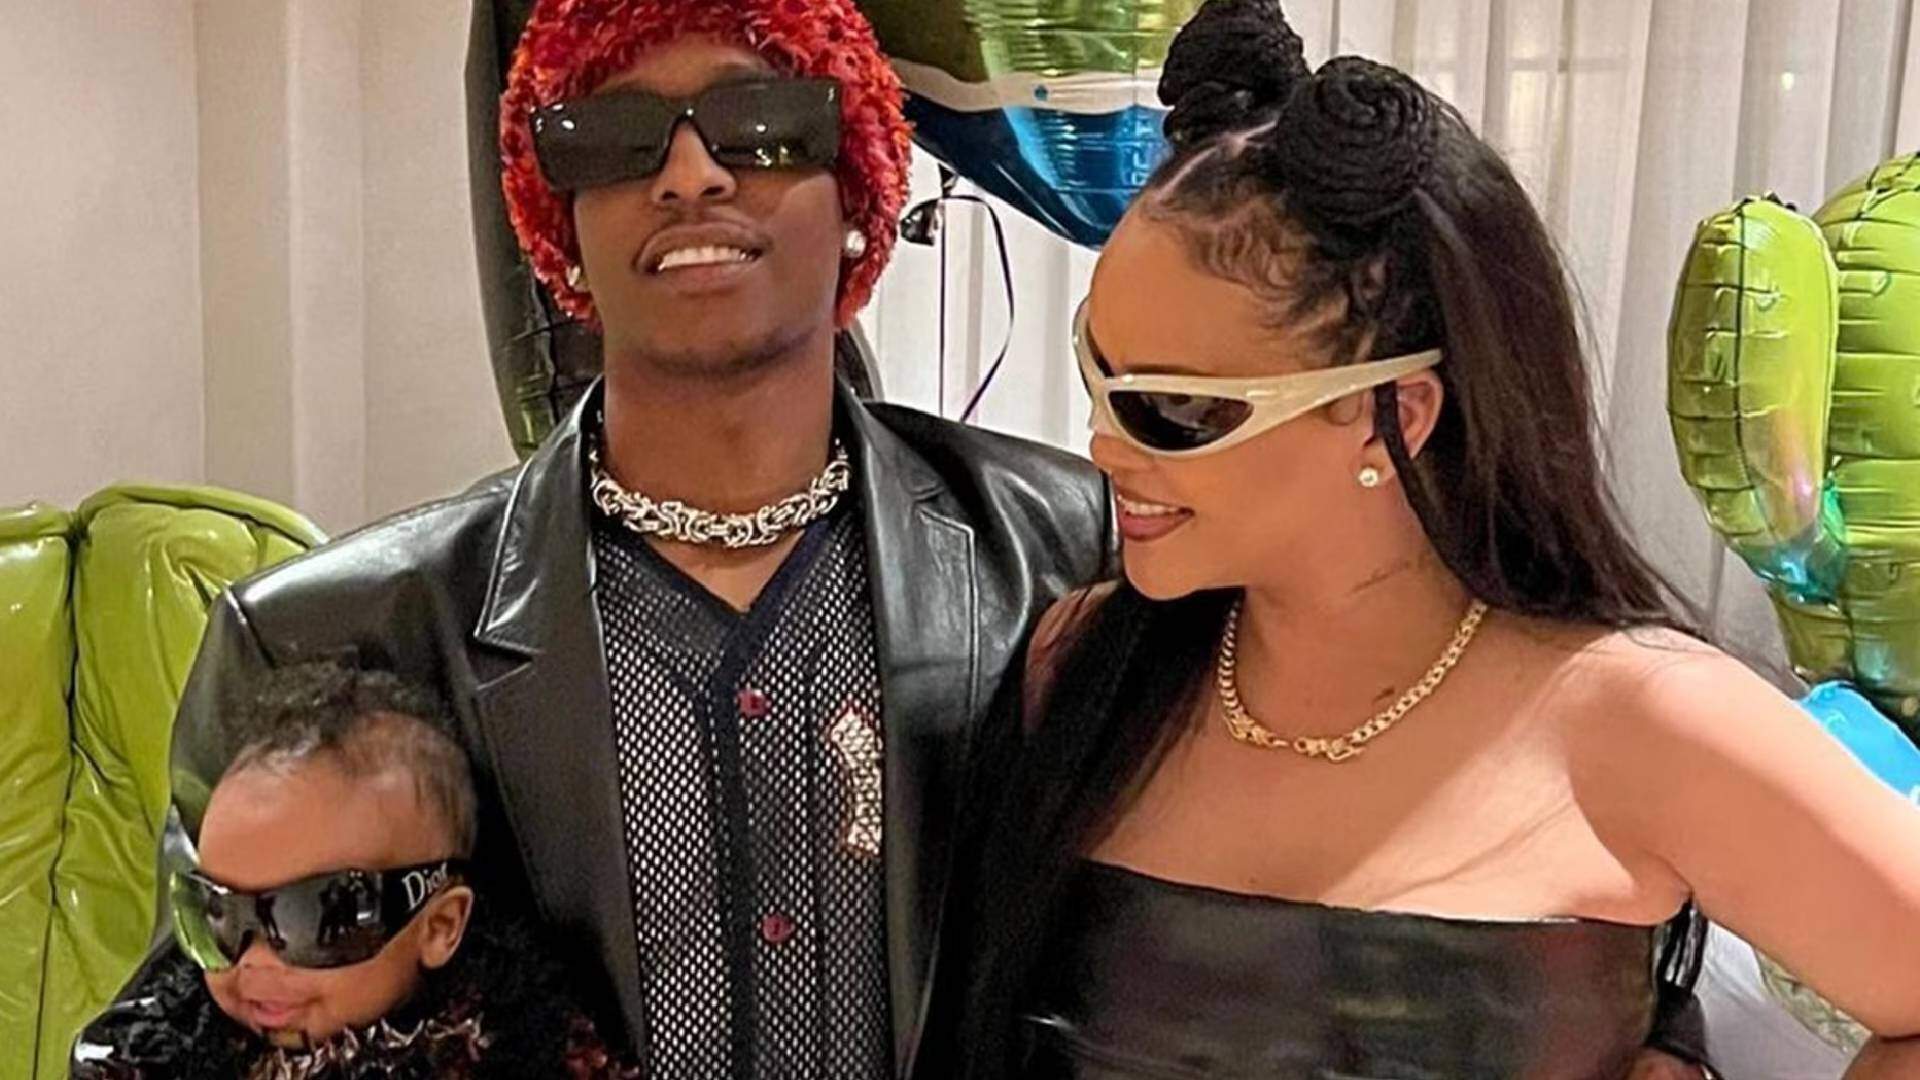 Rihanna emociona fãs ao publicar foto rara de A$AP Rocky em momento único e especial com o filho: “Meus garotos” - Metropolitana FM